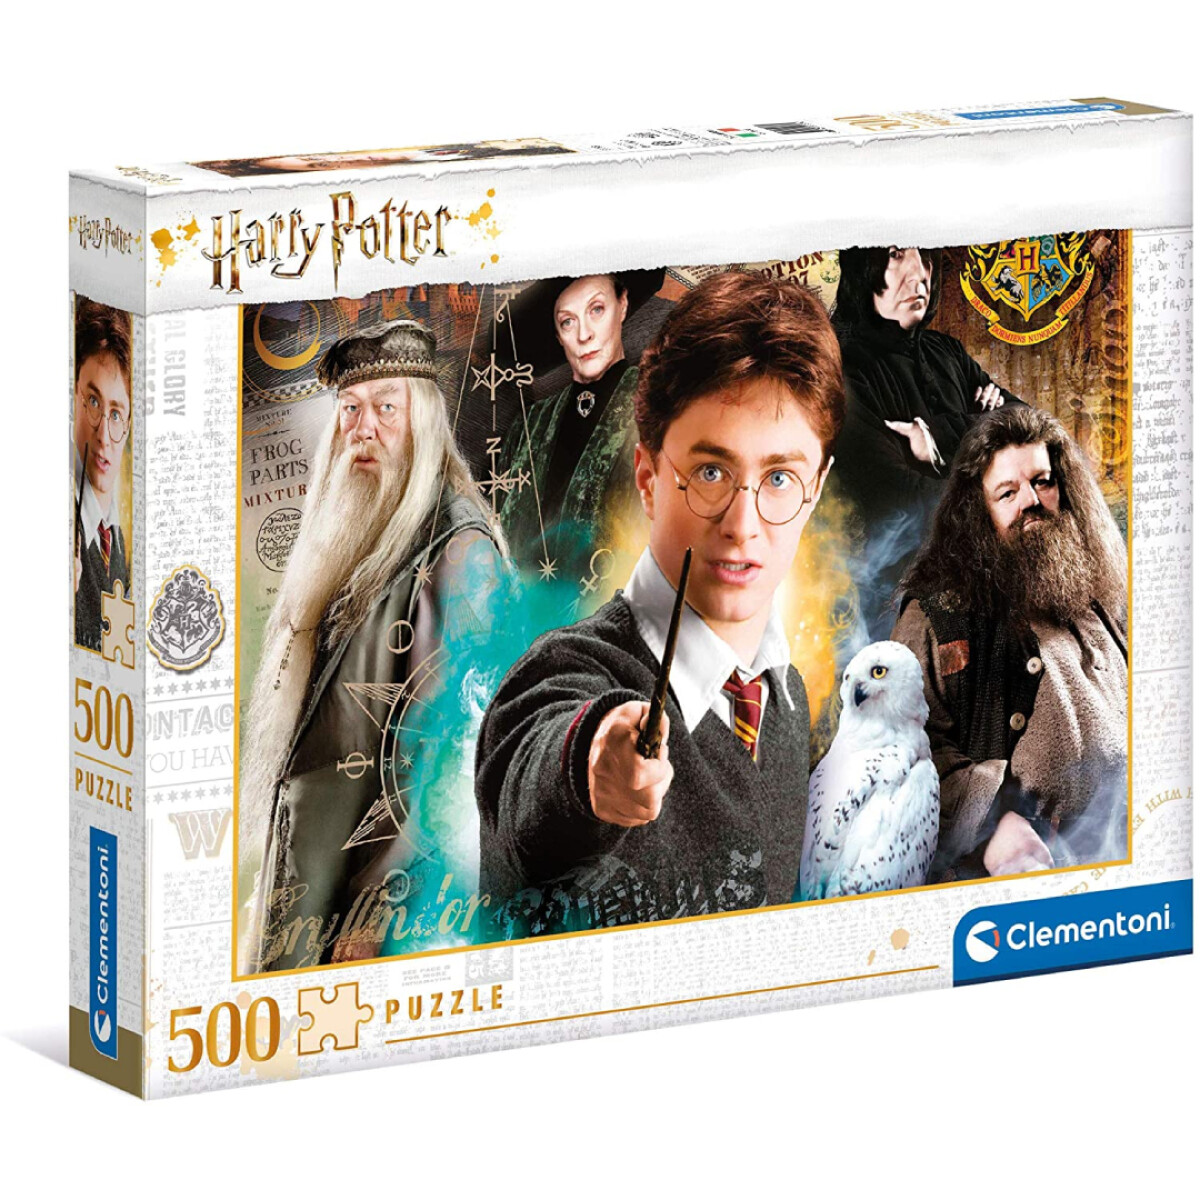 Puzzle Clementoni 500 Piezas Harry Potter - 001 